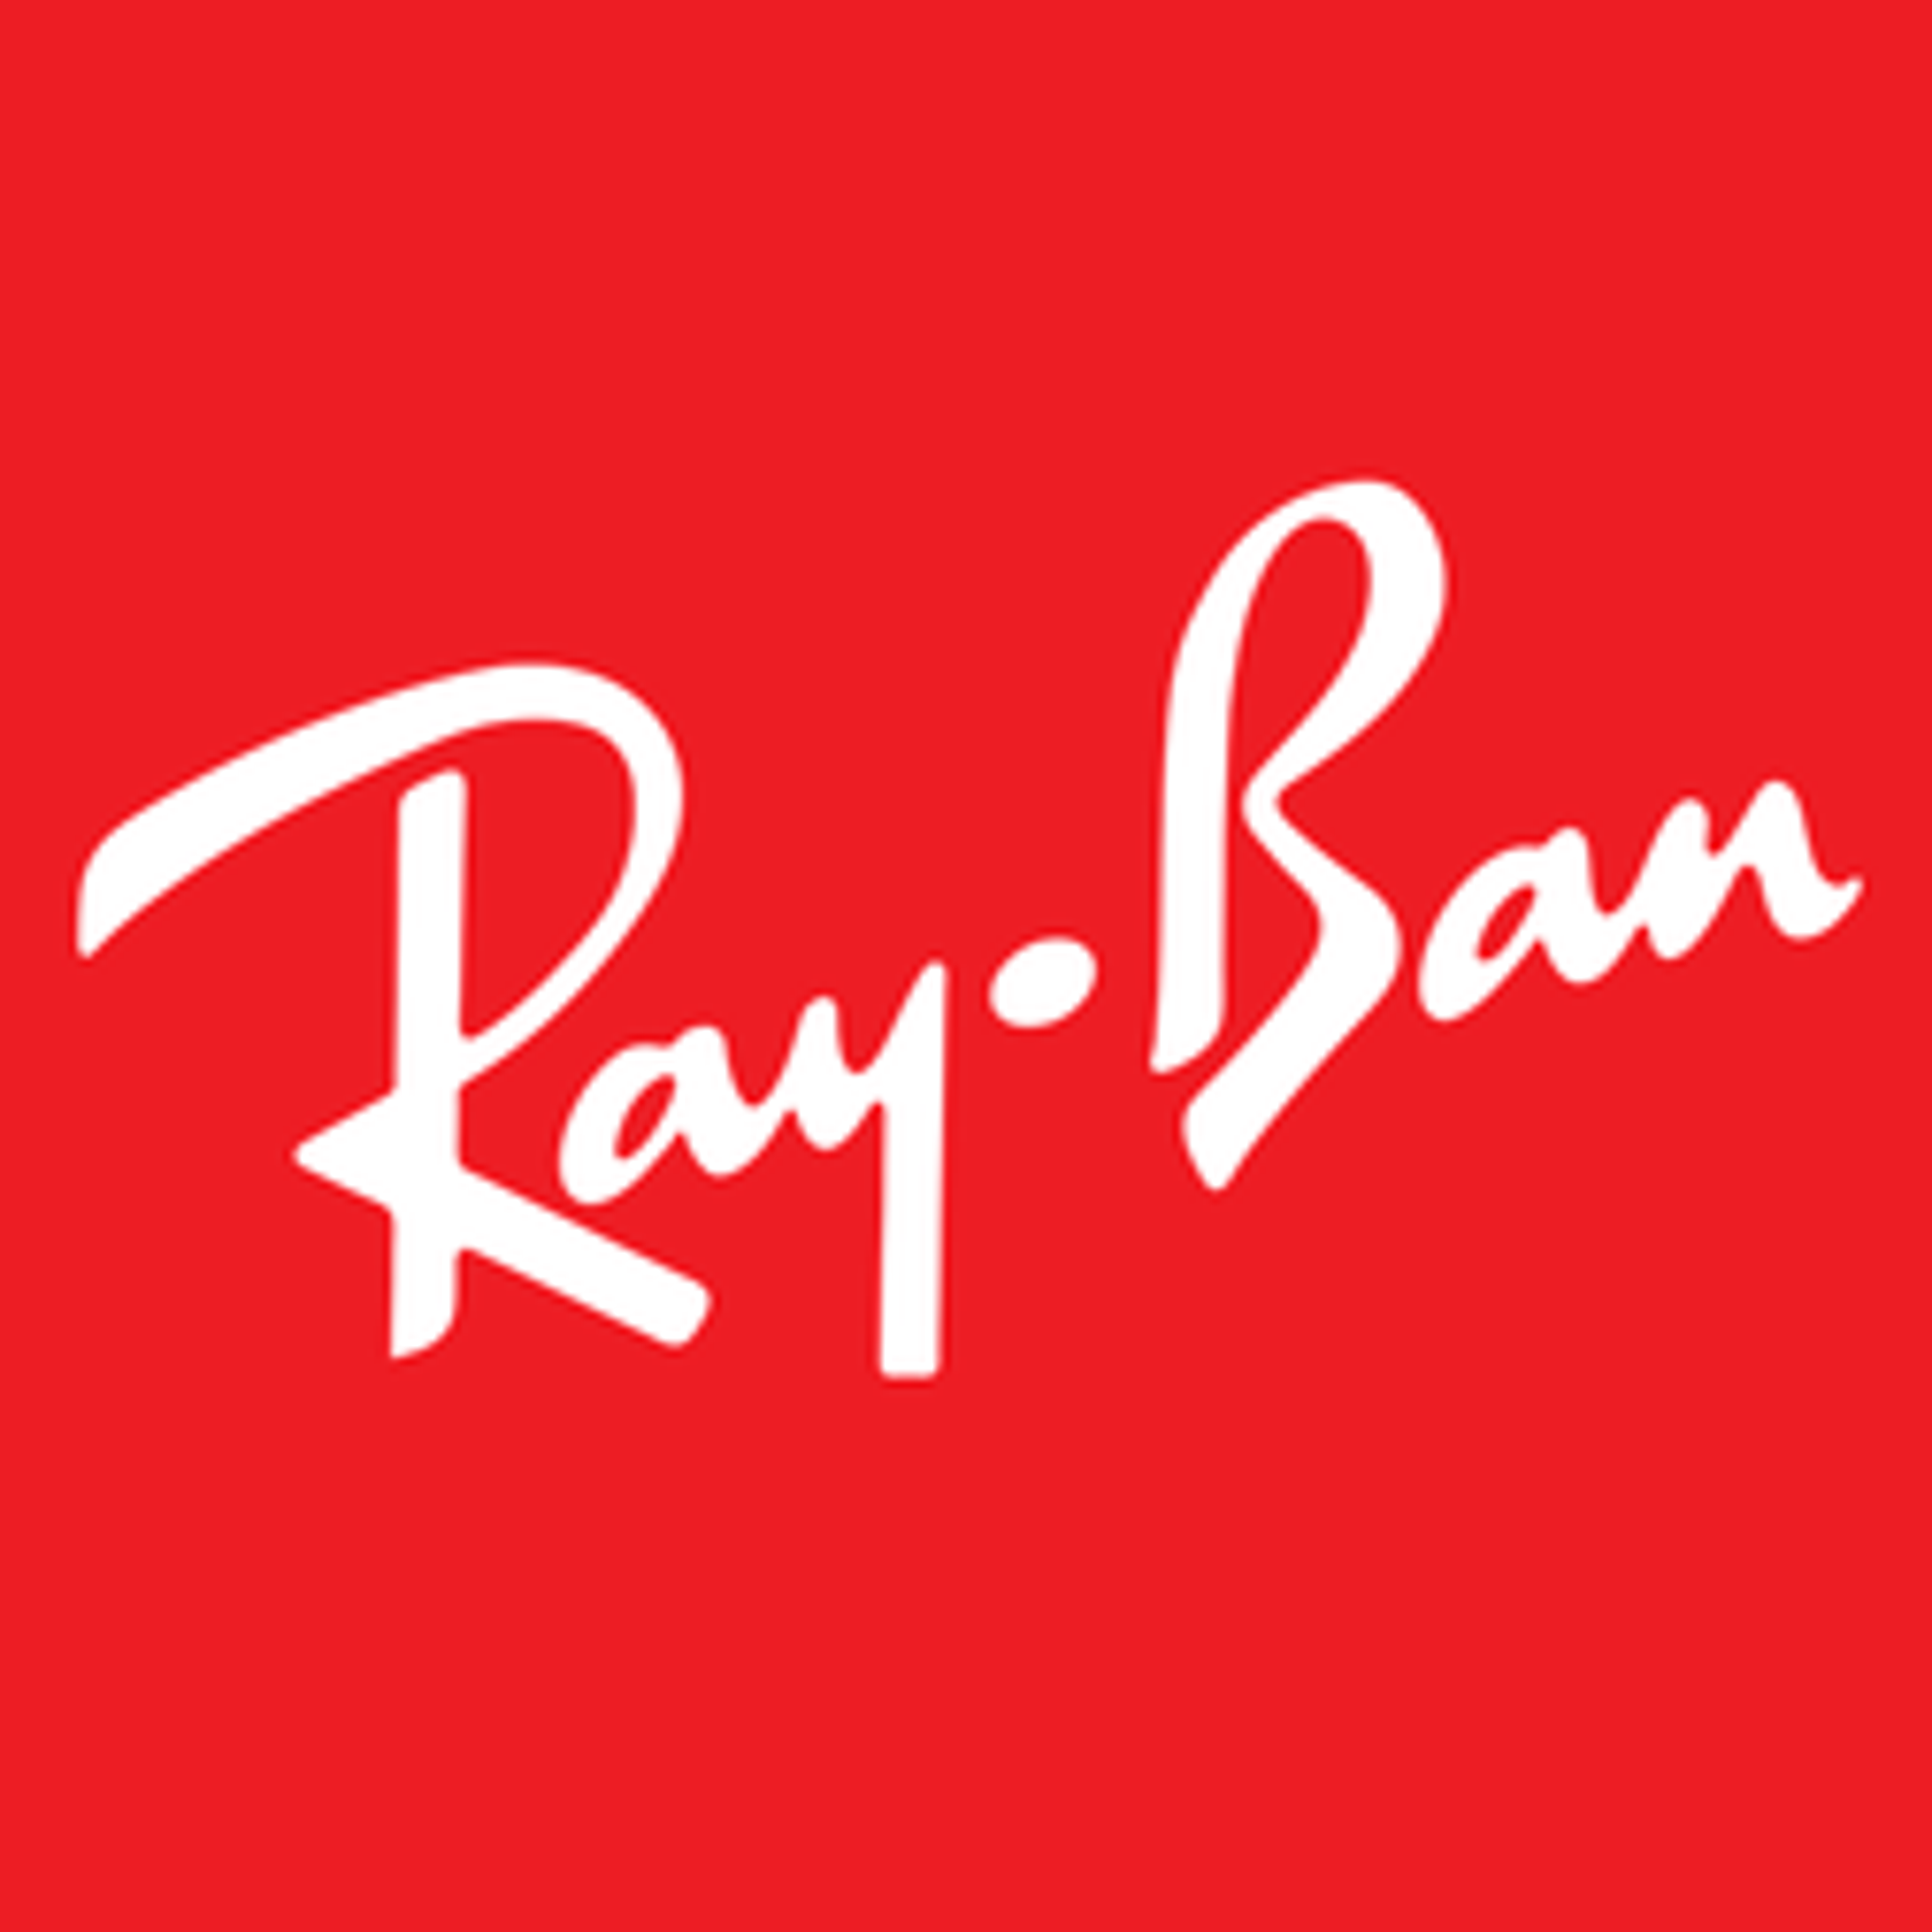  Ray Ban 